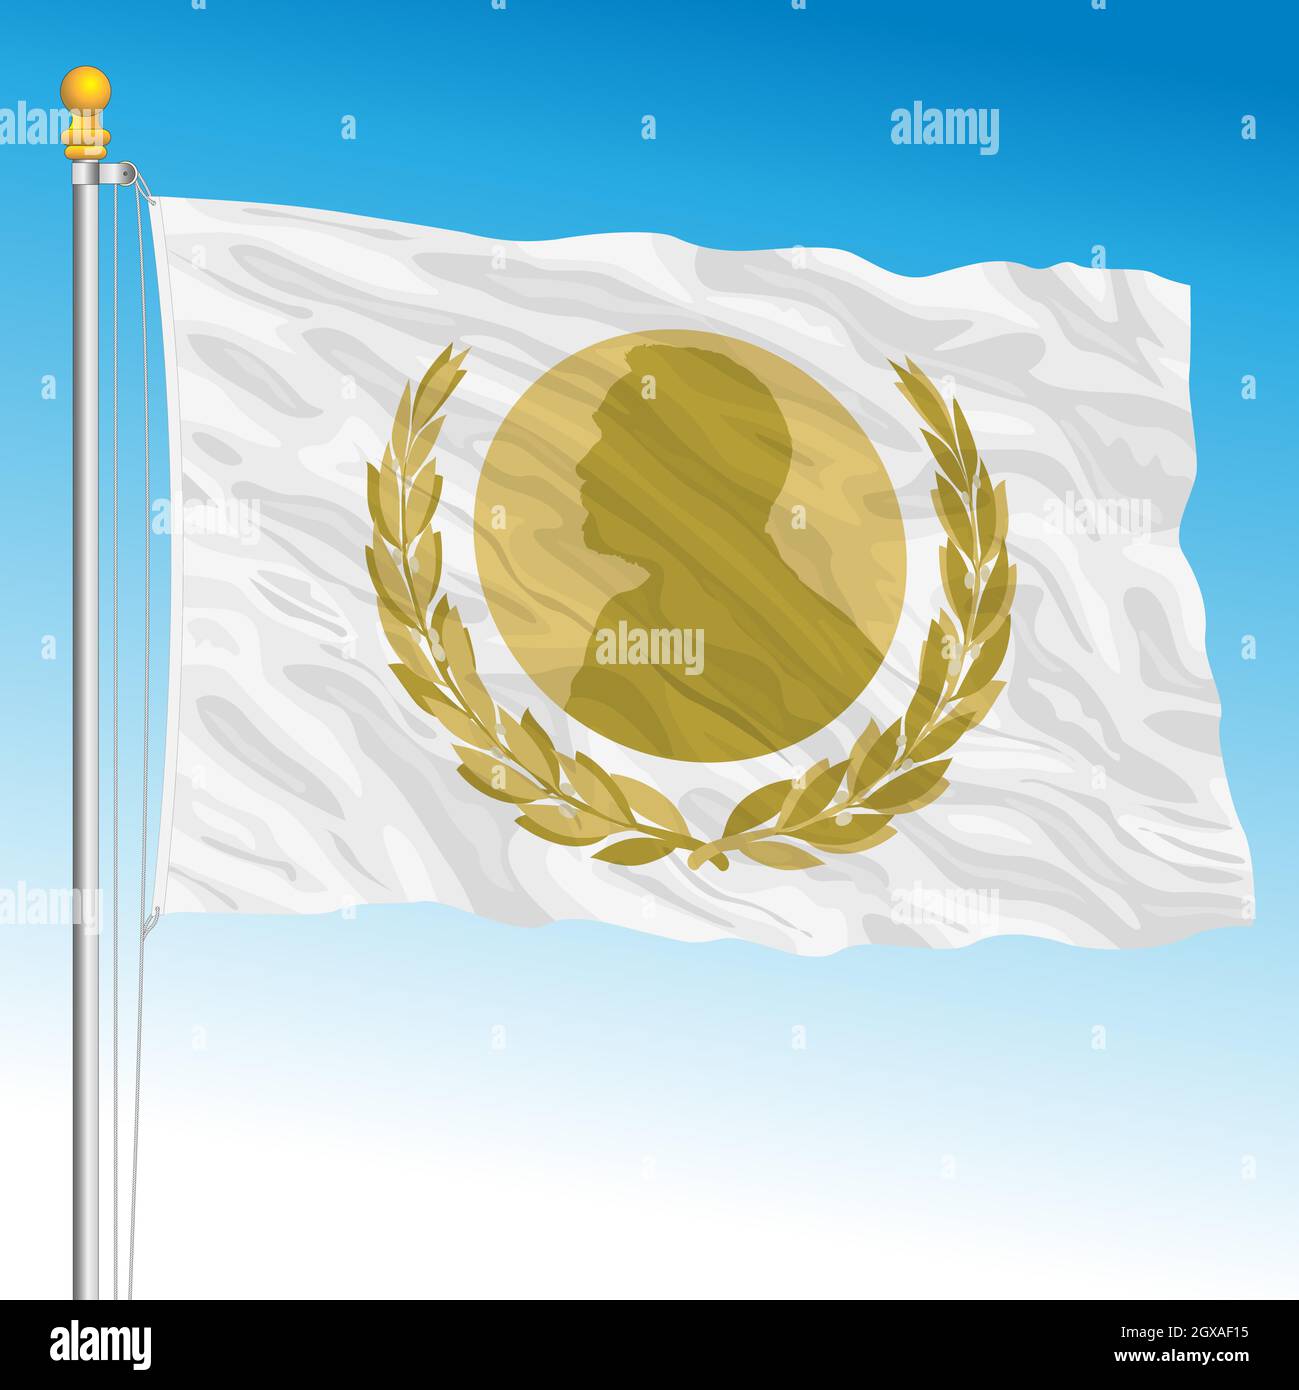 Nobel prize fantasy flag, Sweden, vector illustration Stock Vector